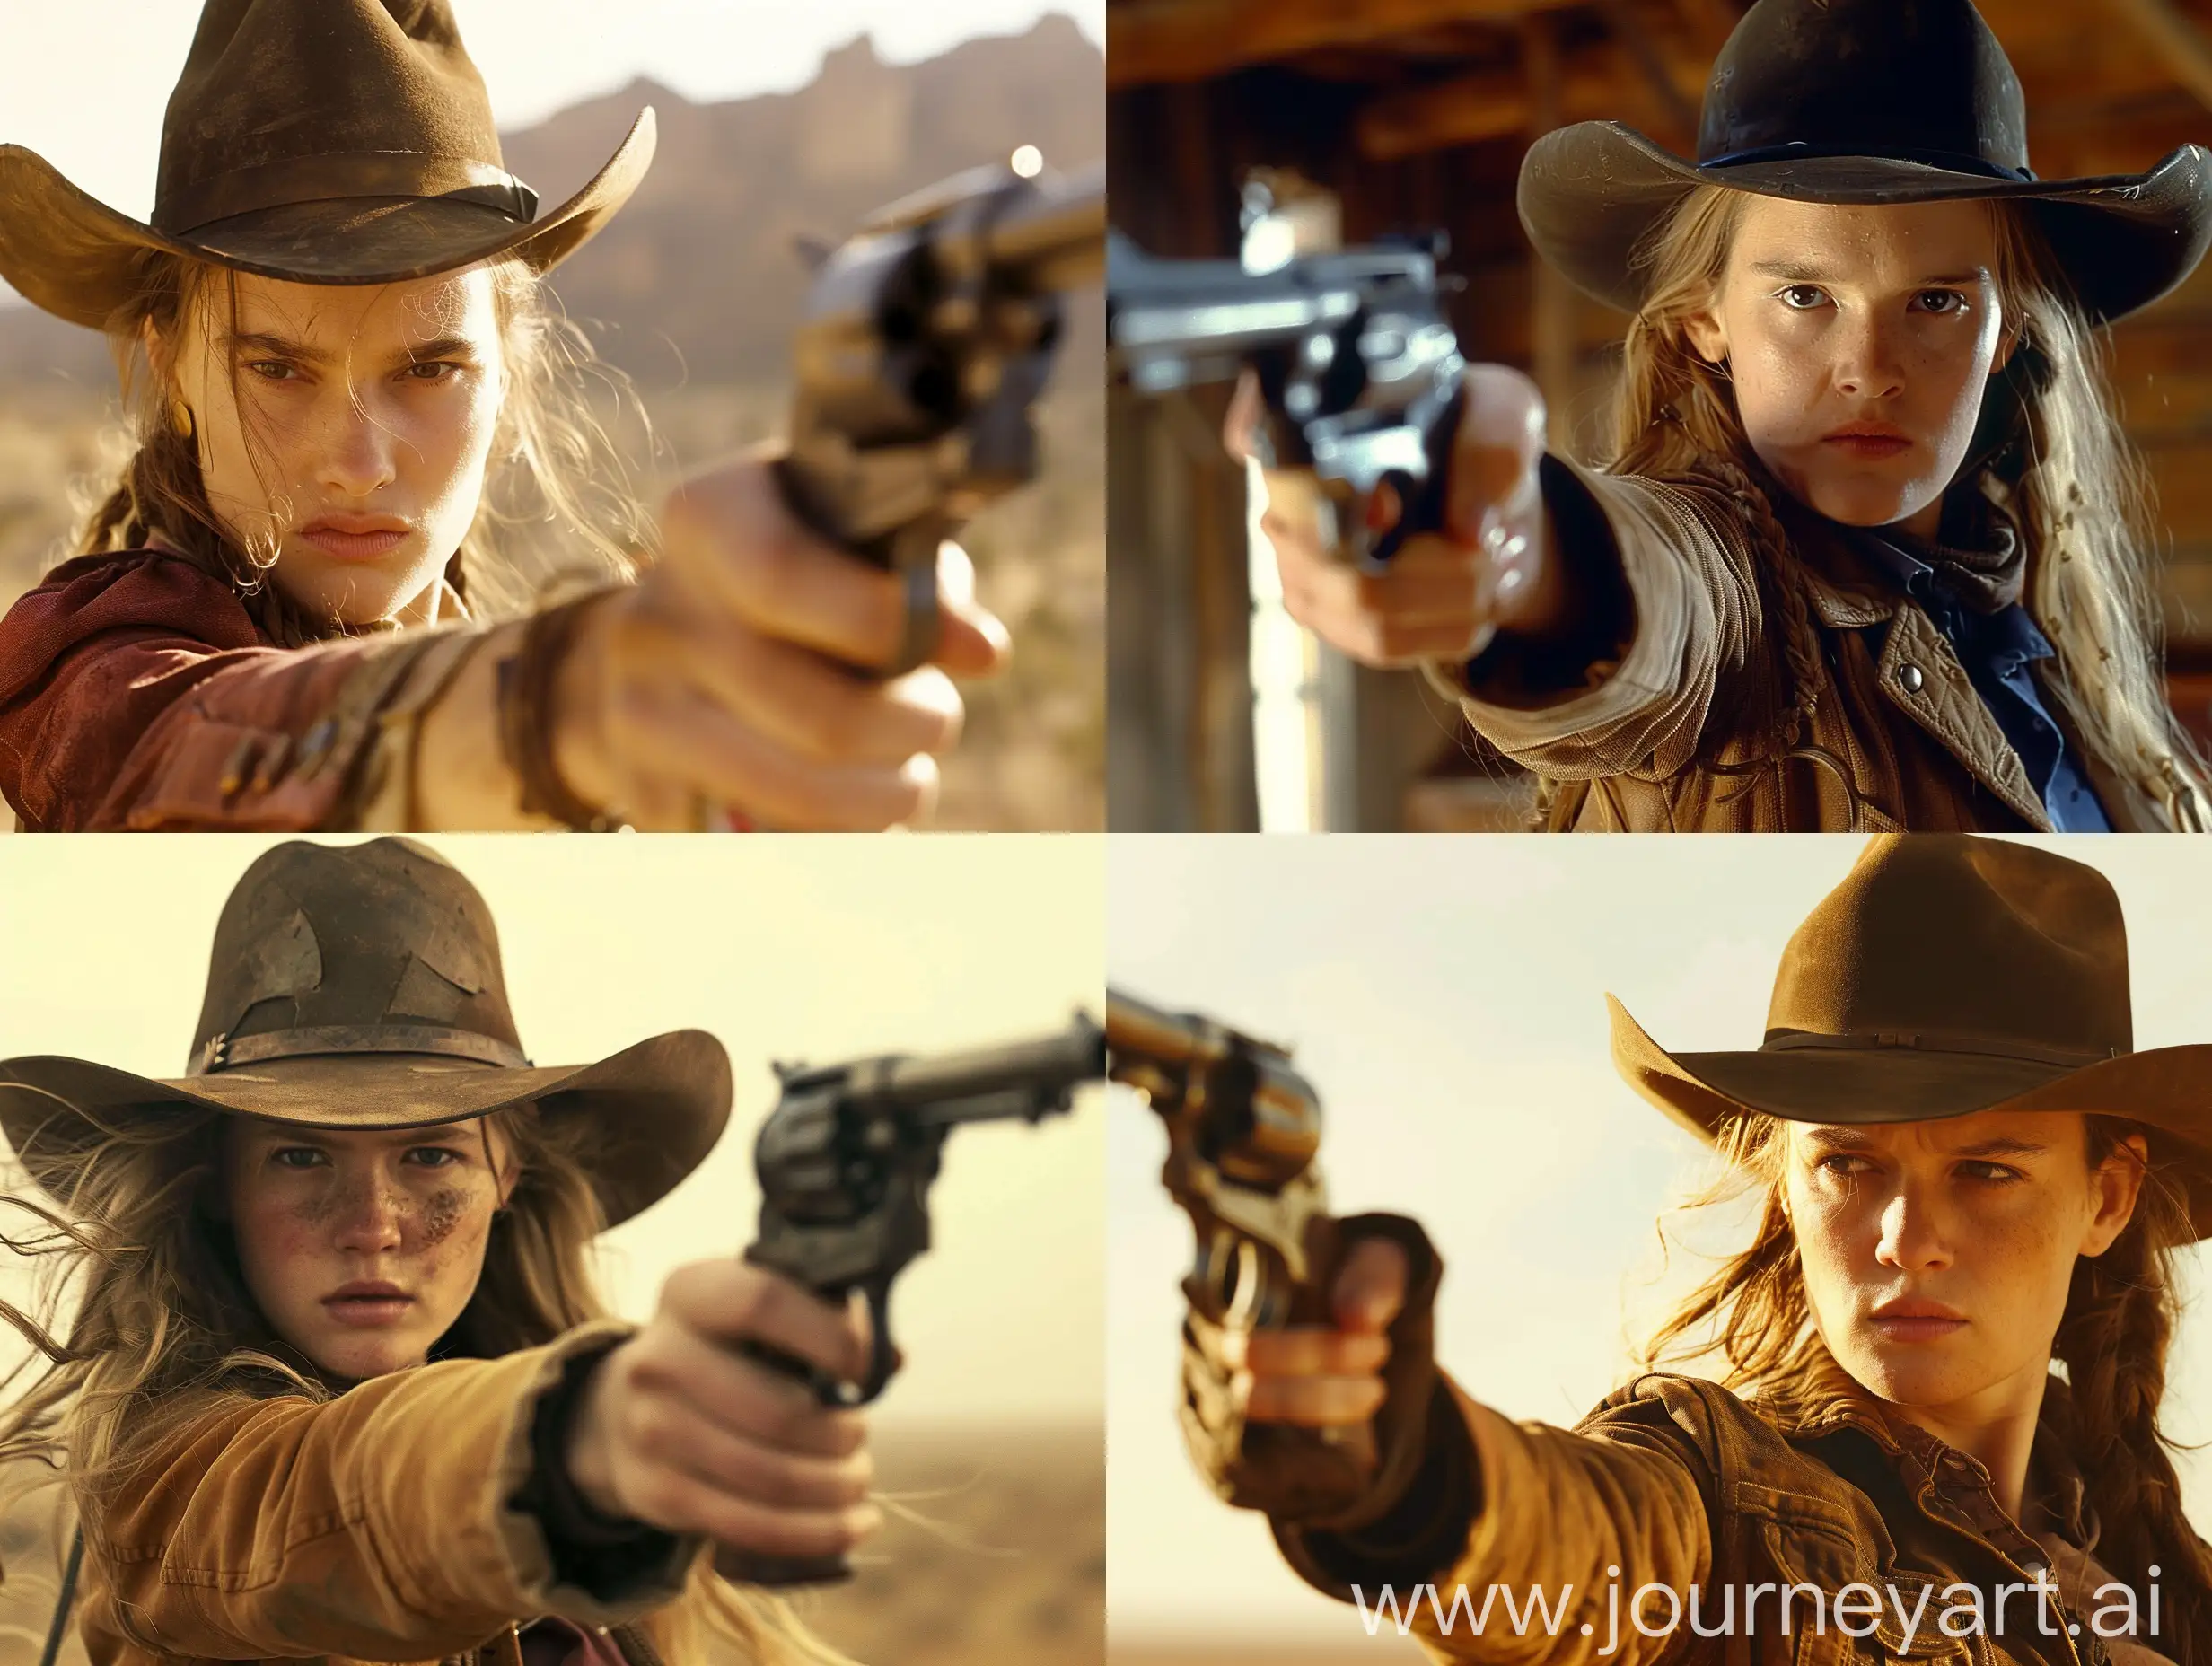 film still, film by Quentin Tarantino, western, 19th century, young woman, cowboy hat, gun